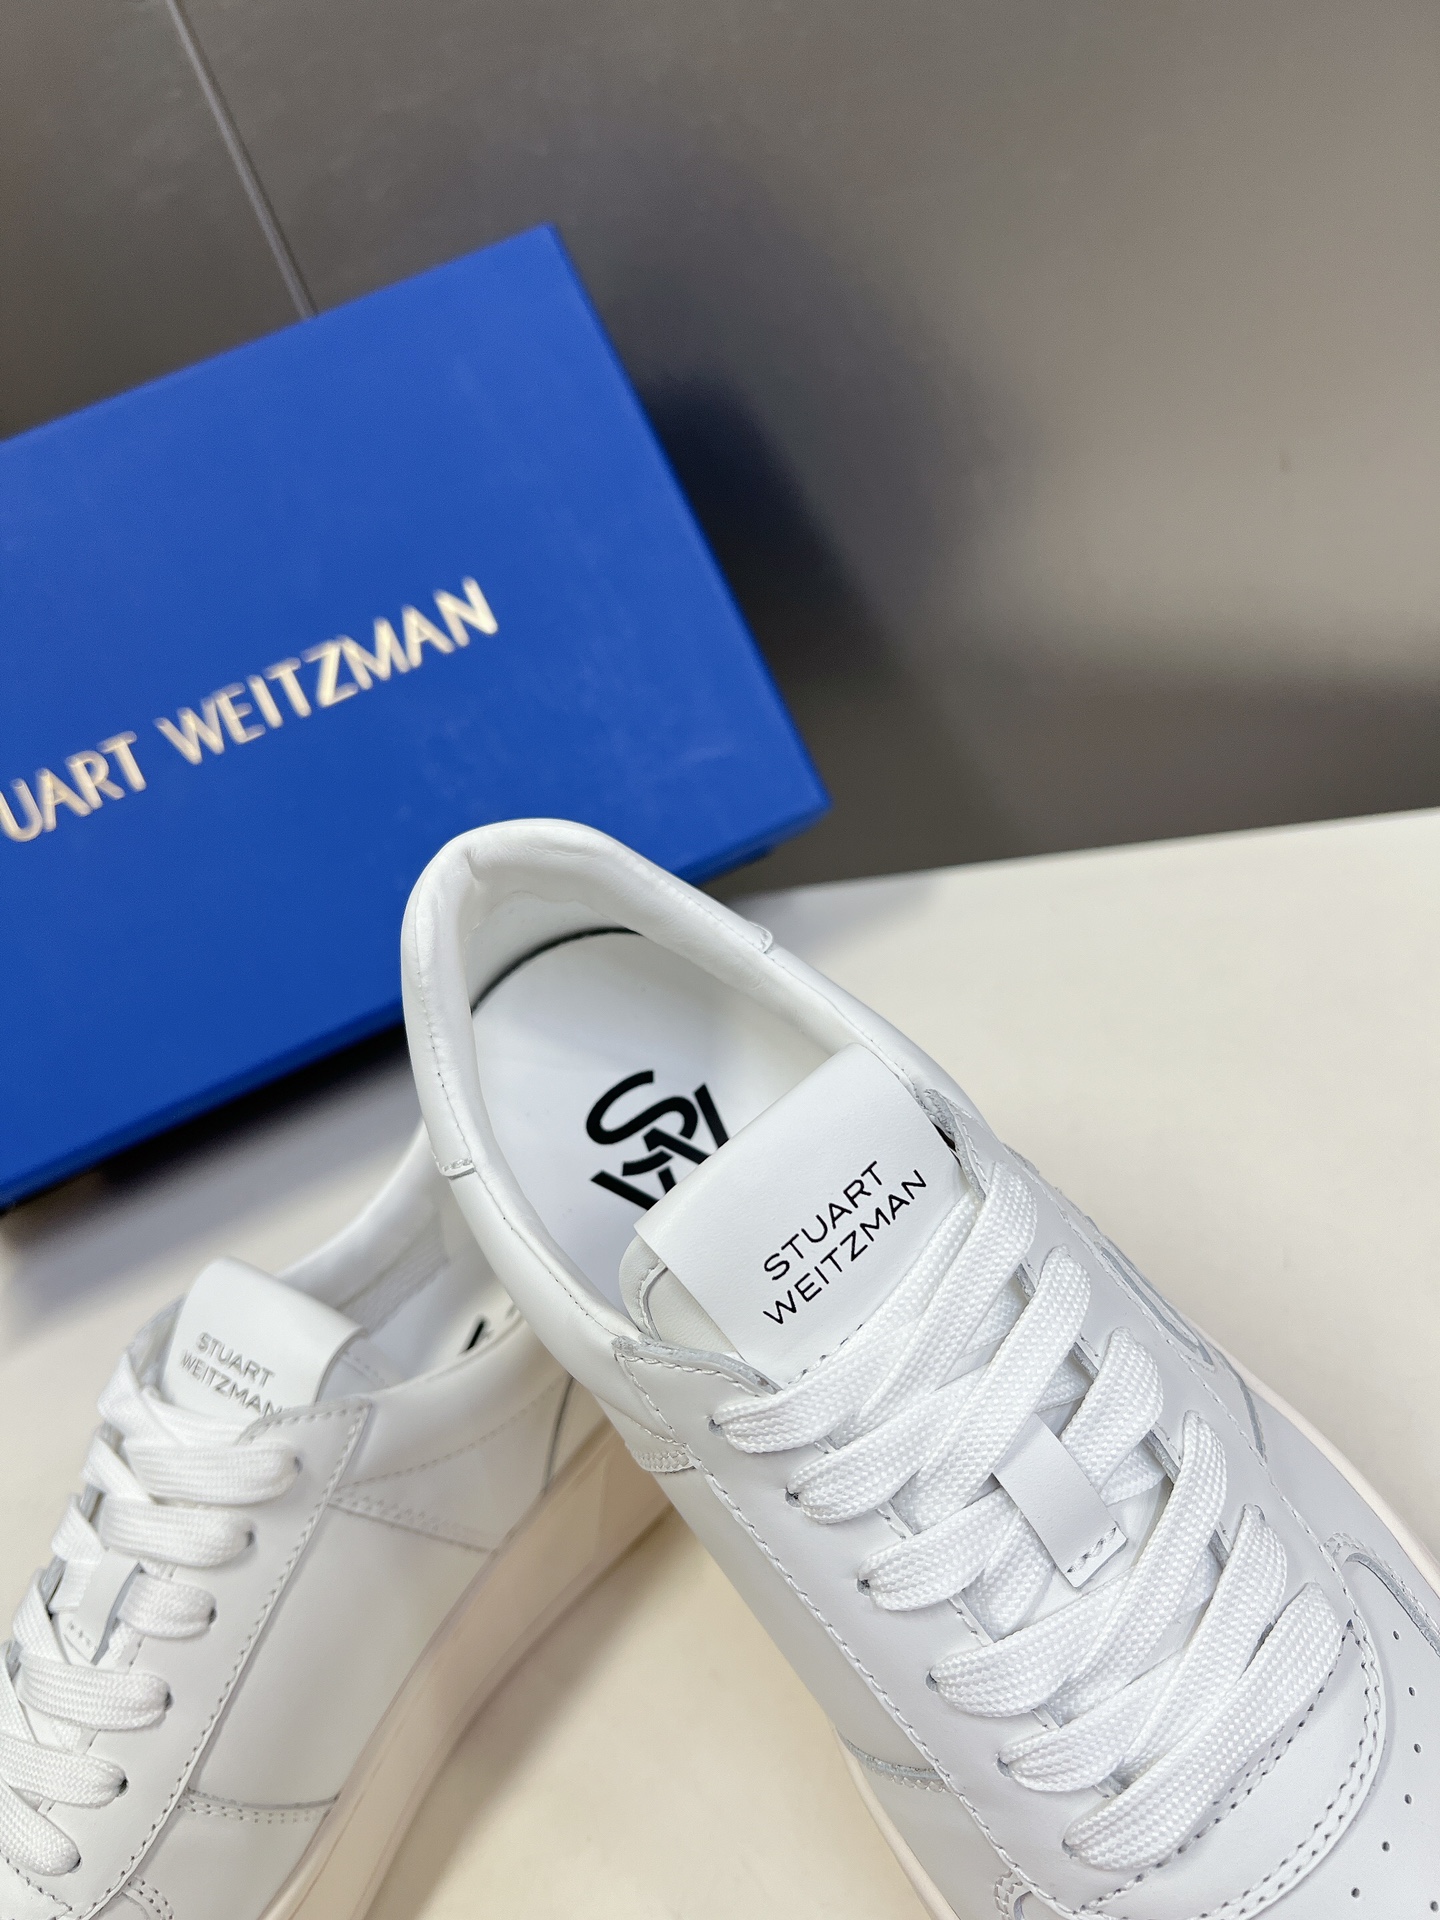 StuartWeitzman高版本SW低帮休闲运动鞋华丽焕新经典系带款小白鞋全新上线恩缇韦曼专门为女性量